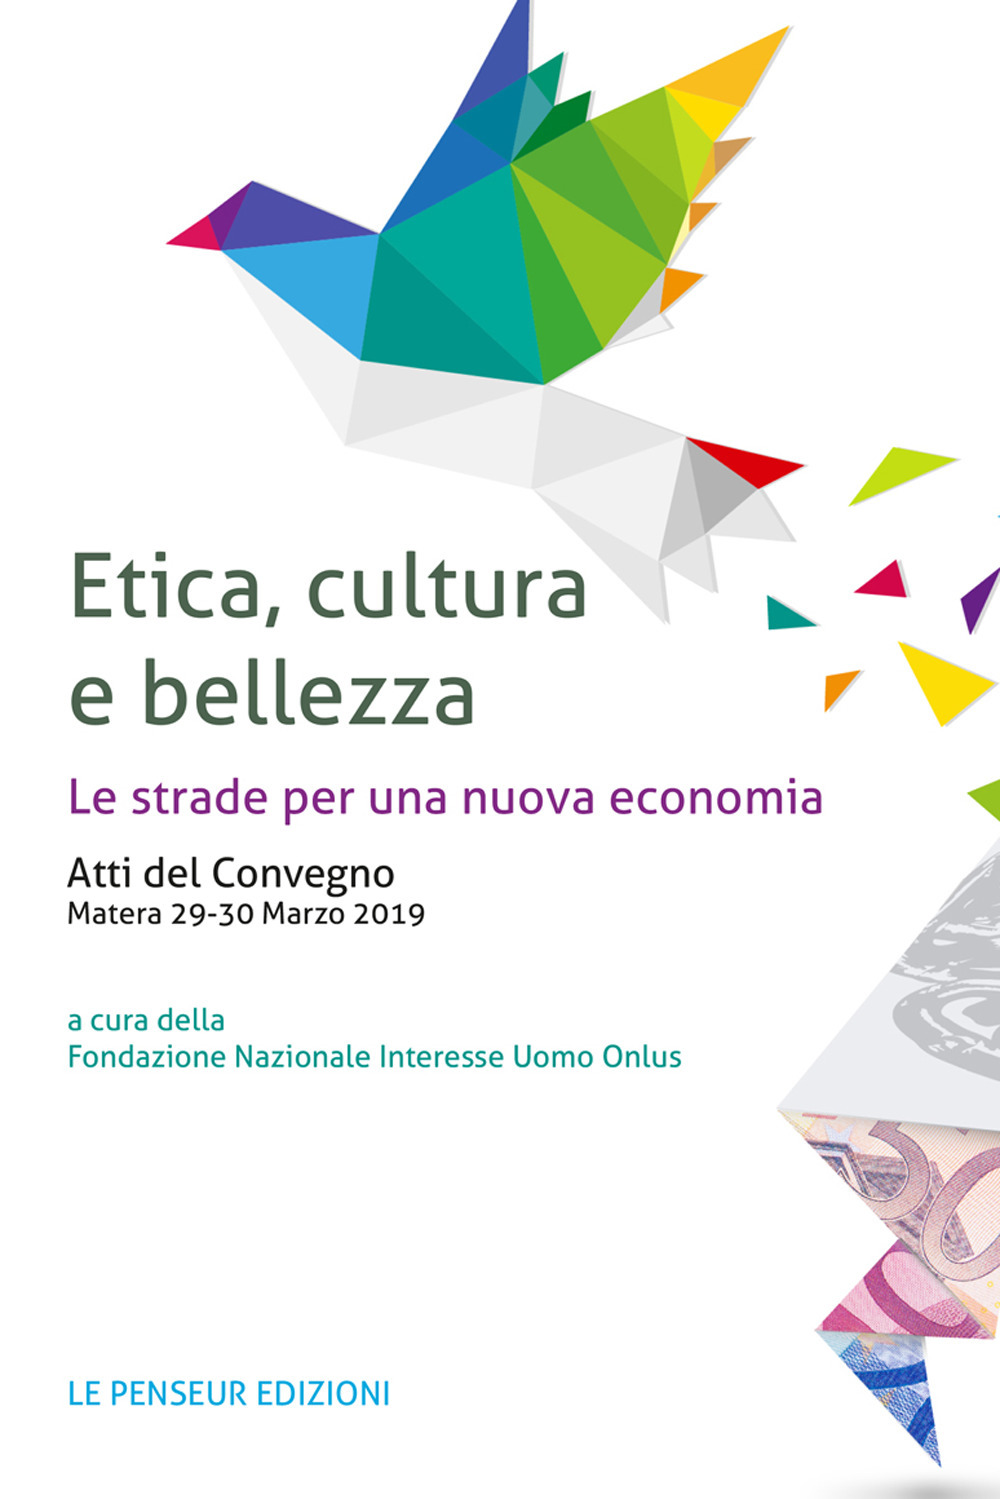 Etica, cultura e bellezza. Le strade per una nuova economia. Atti del Convegno (Matera, 29-30 marzo 2019)